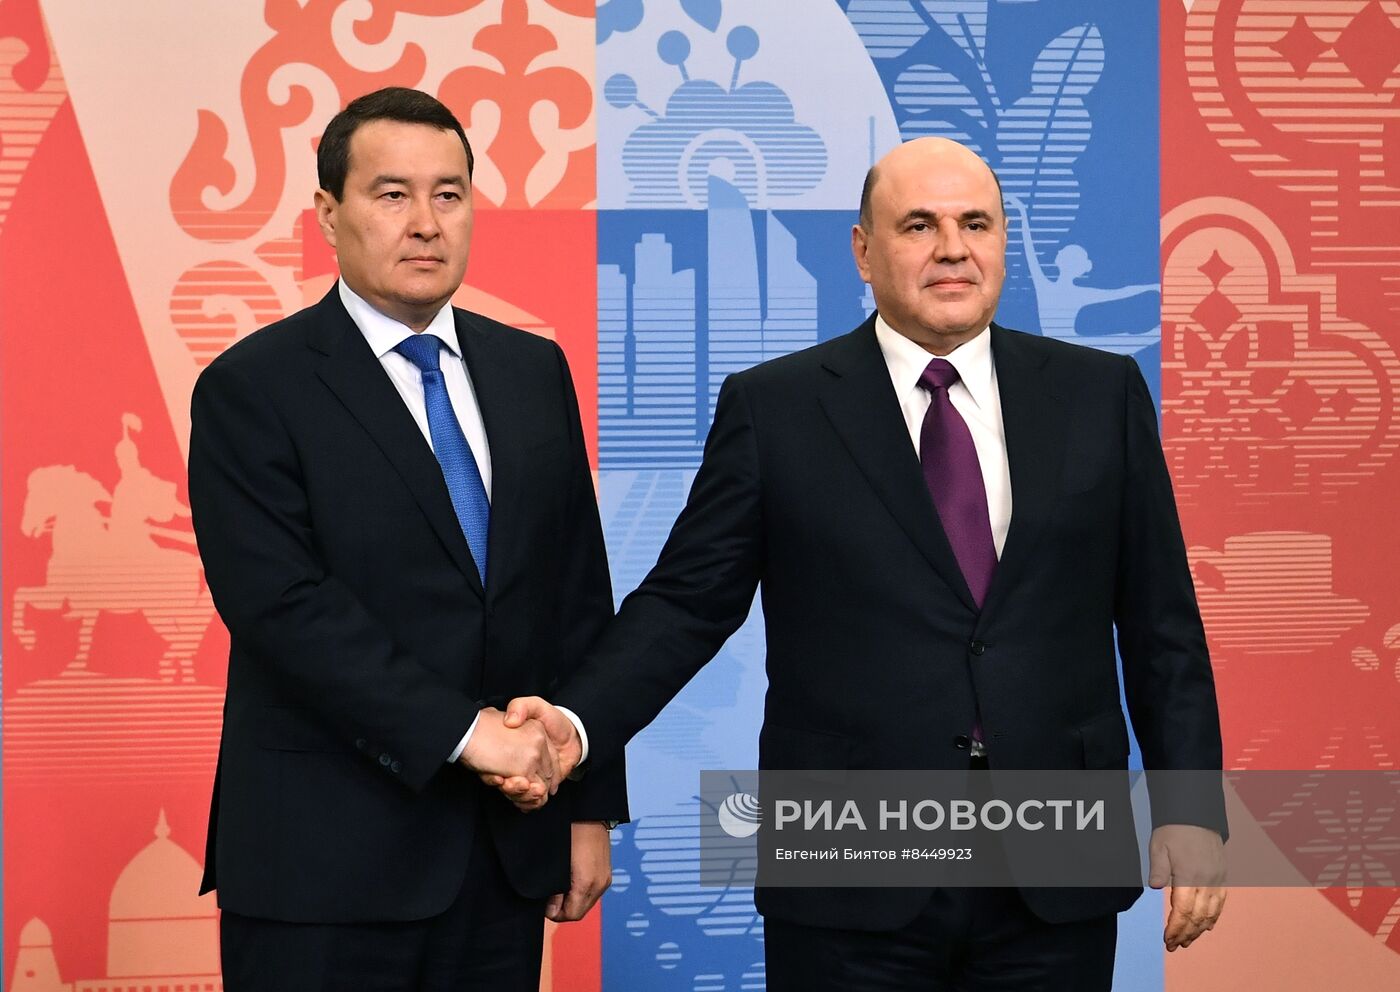 Встреча М. Мишустина с премьер-министром Казахстана А. Смаиловым